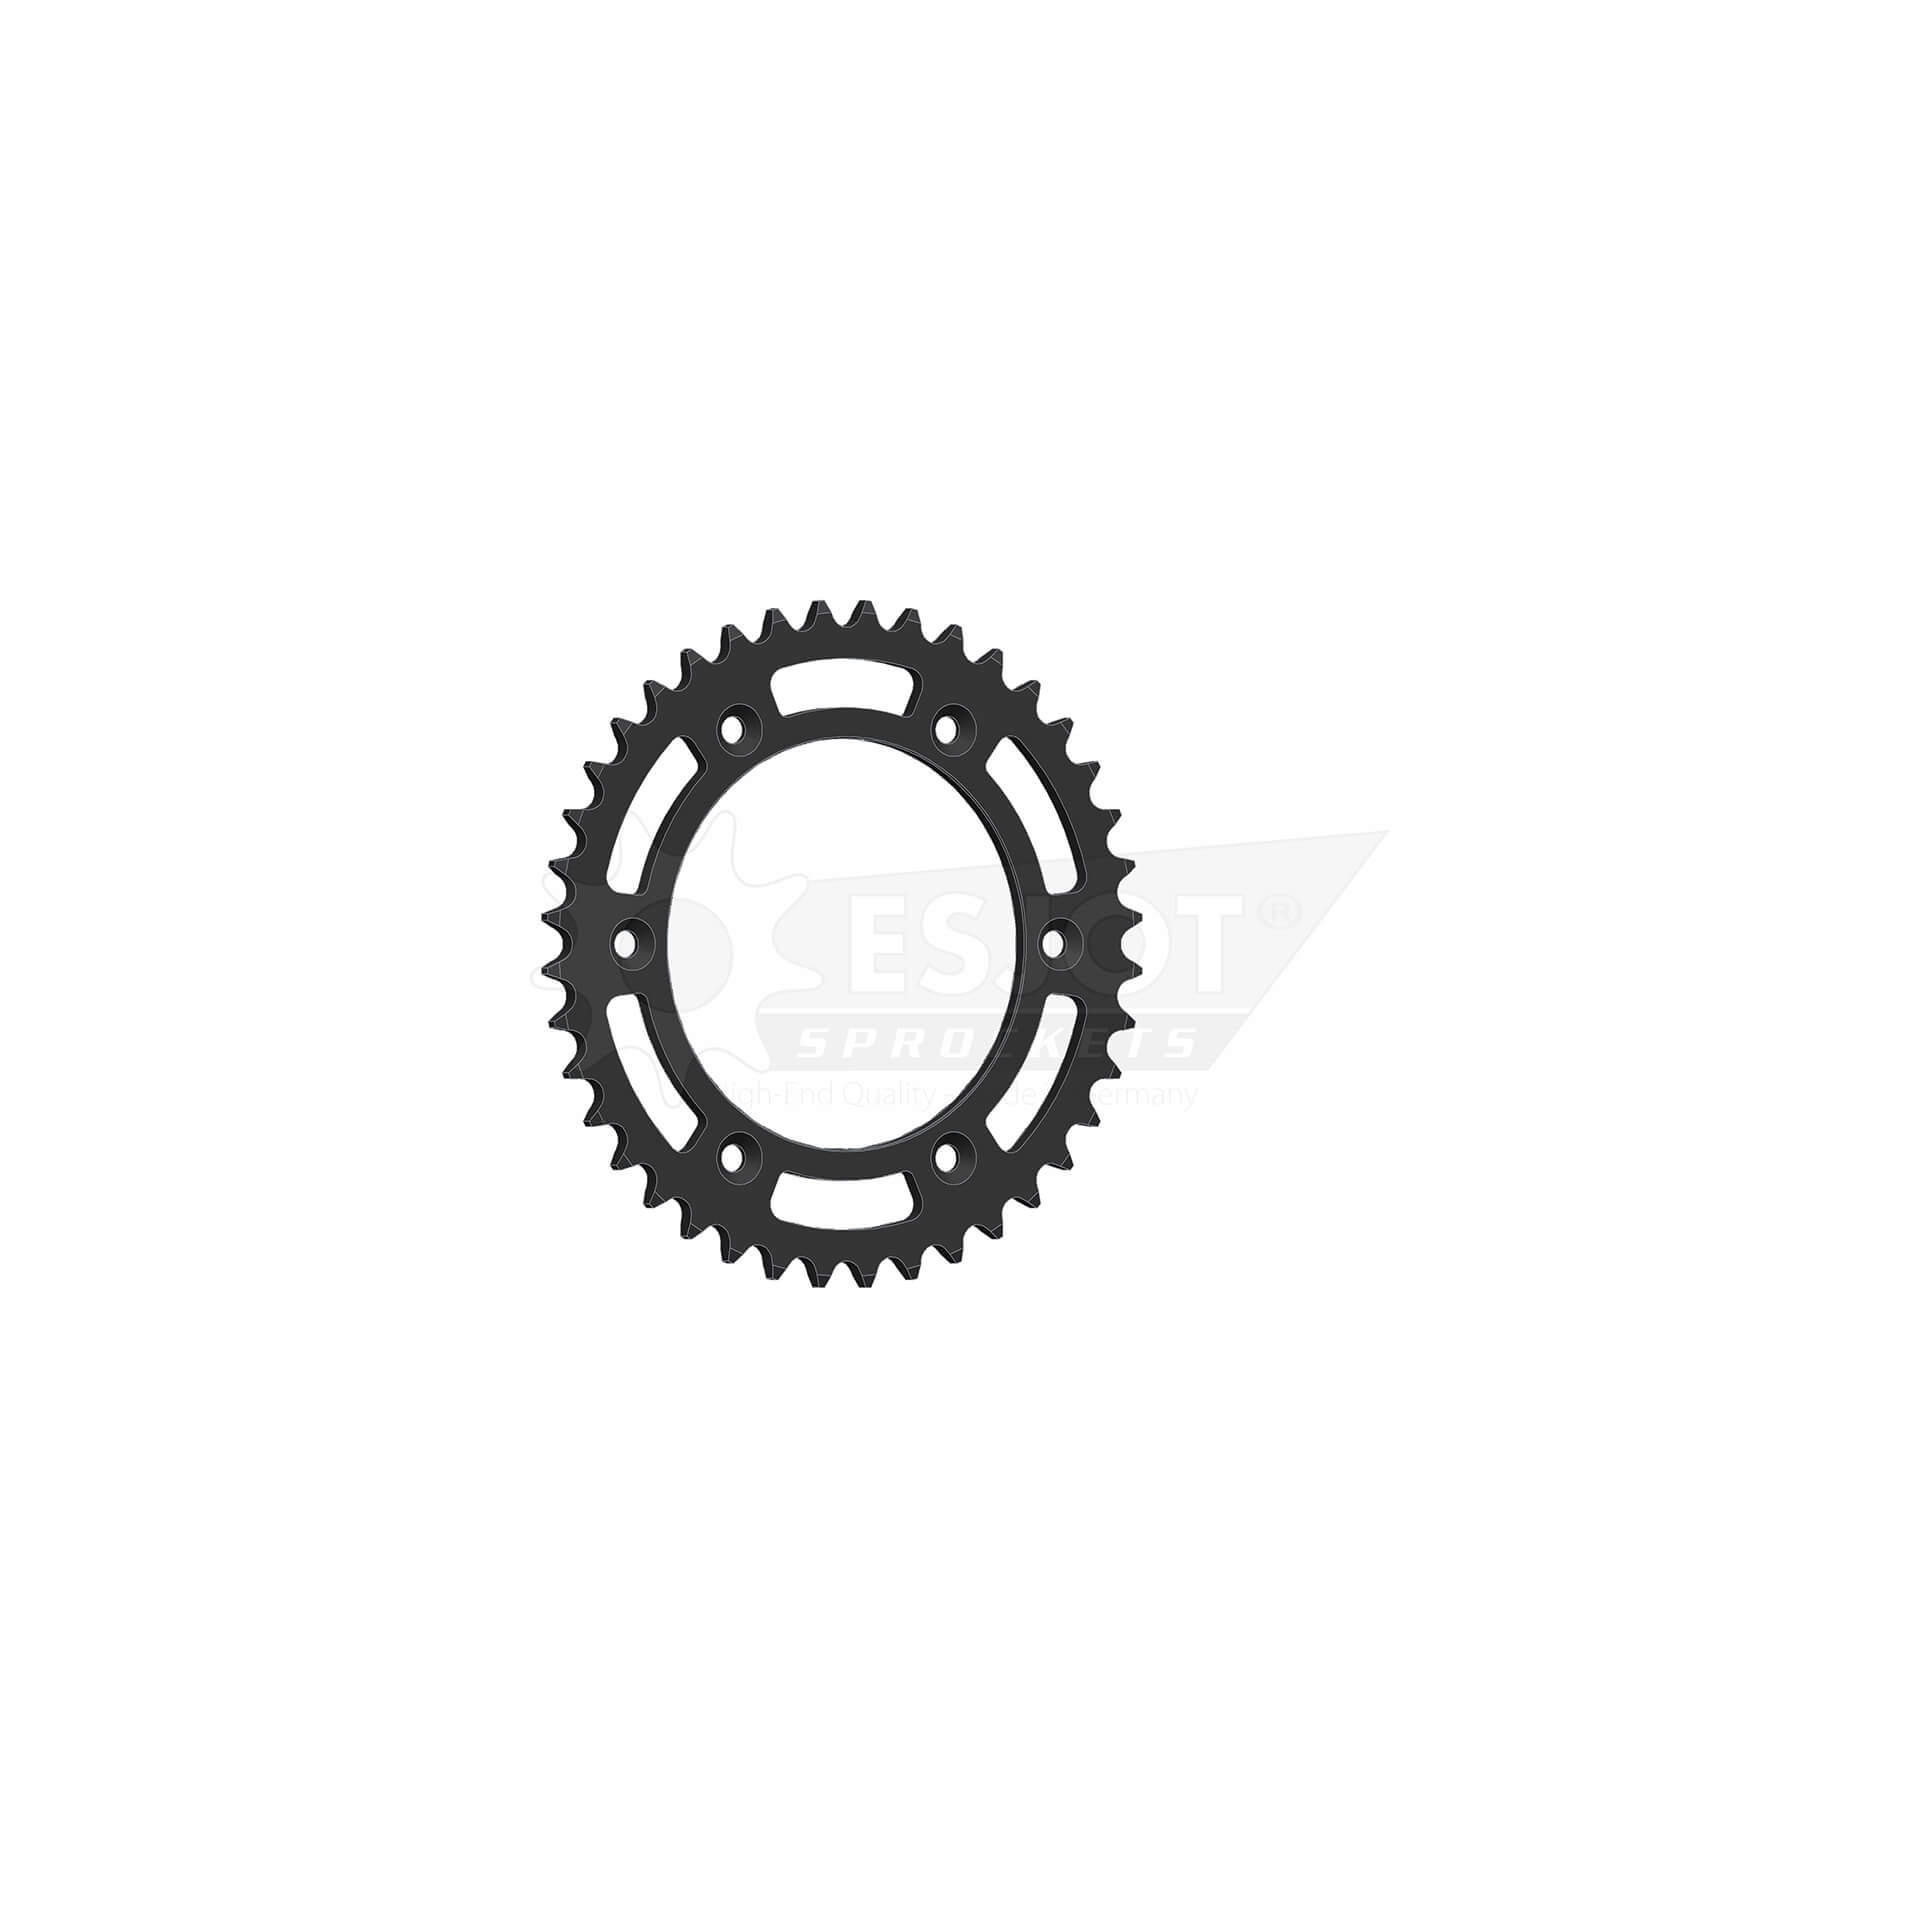 esjot Chain wheel, 40 teeth, 520 pitch (5/8x1/4), aluminium